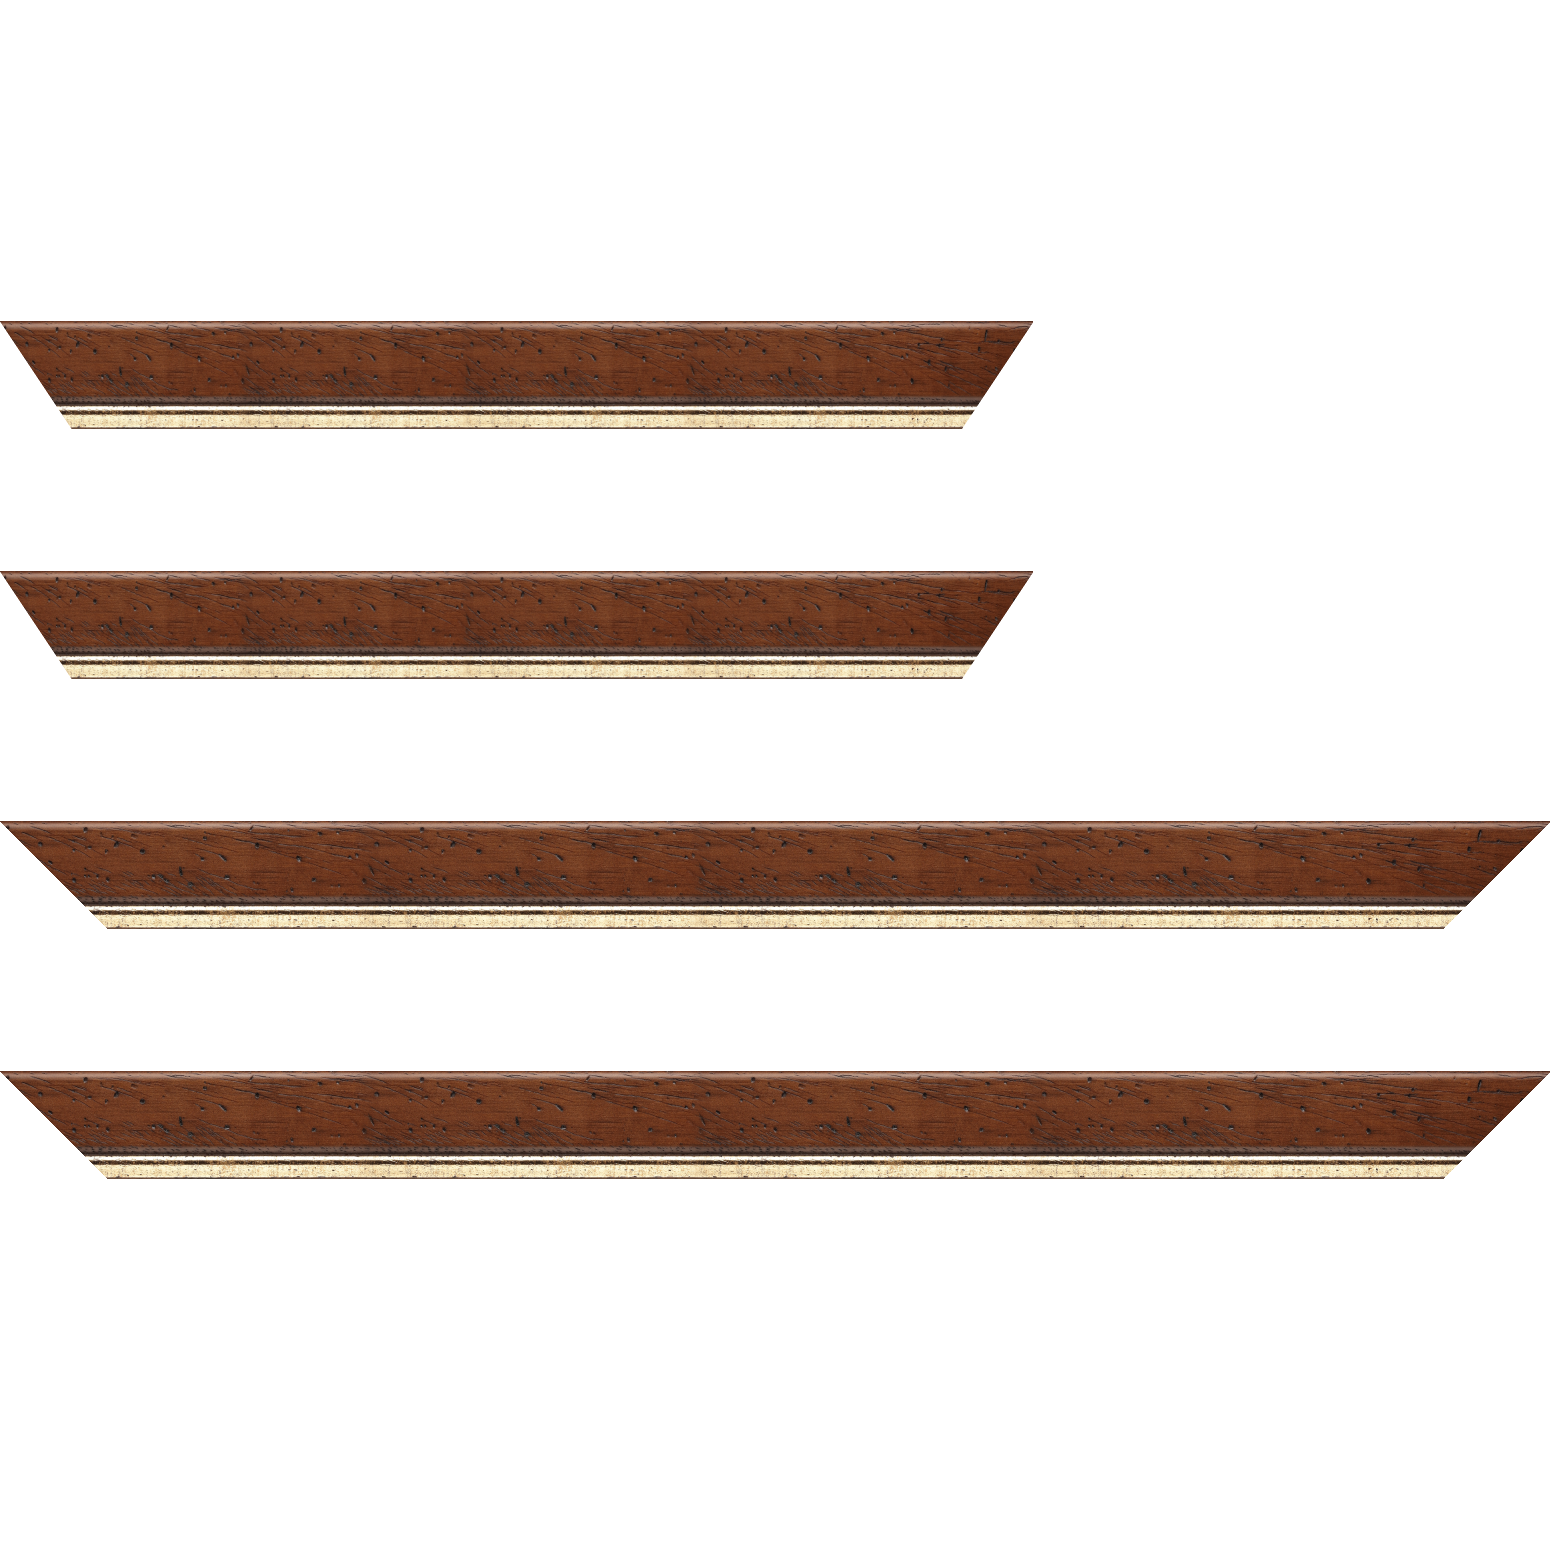 Baguette bois profil arrondi largeur 3.5cm marron satiné classique filet or - 59.4x84.1